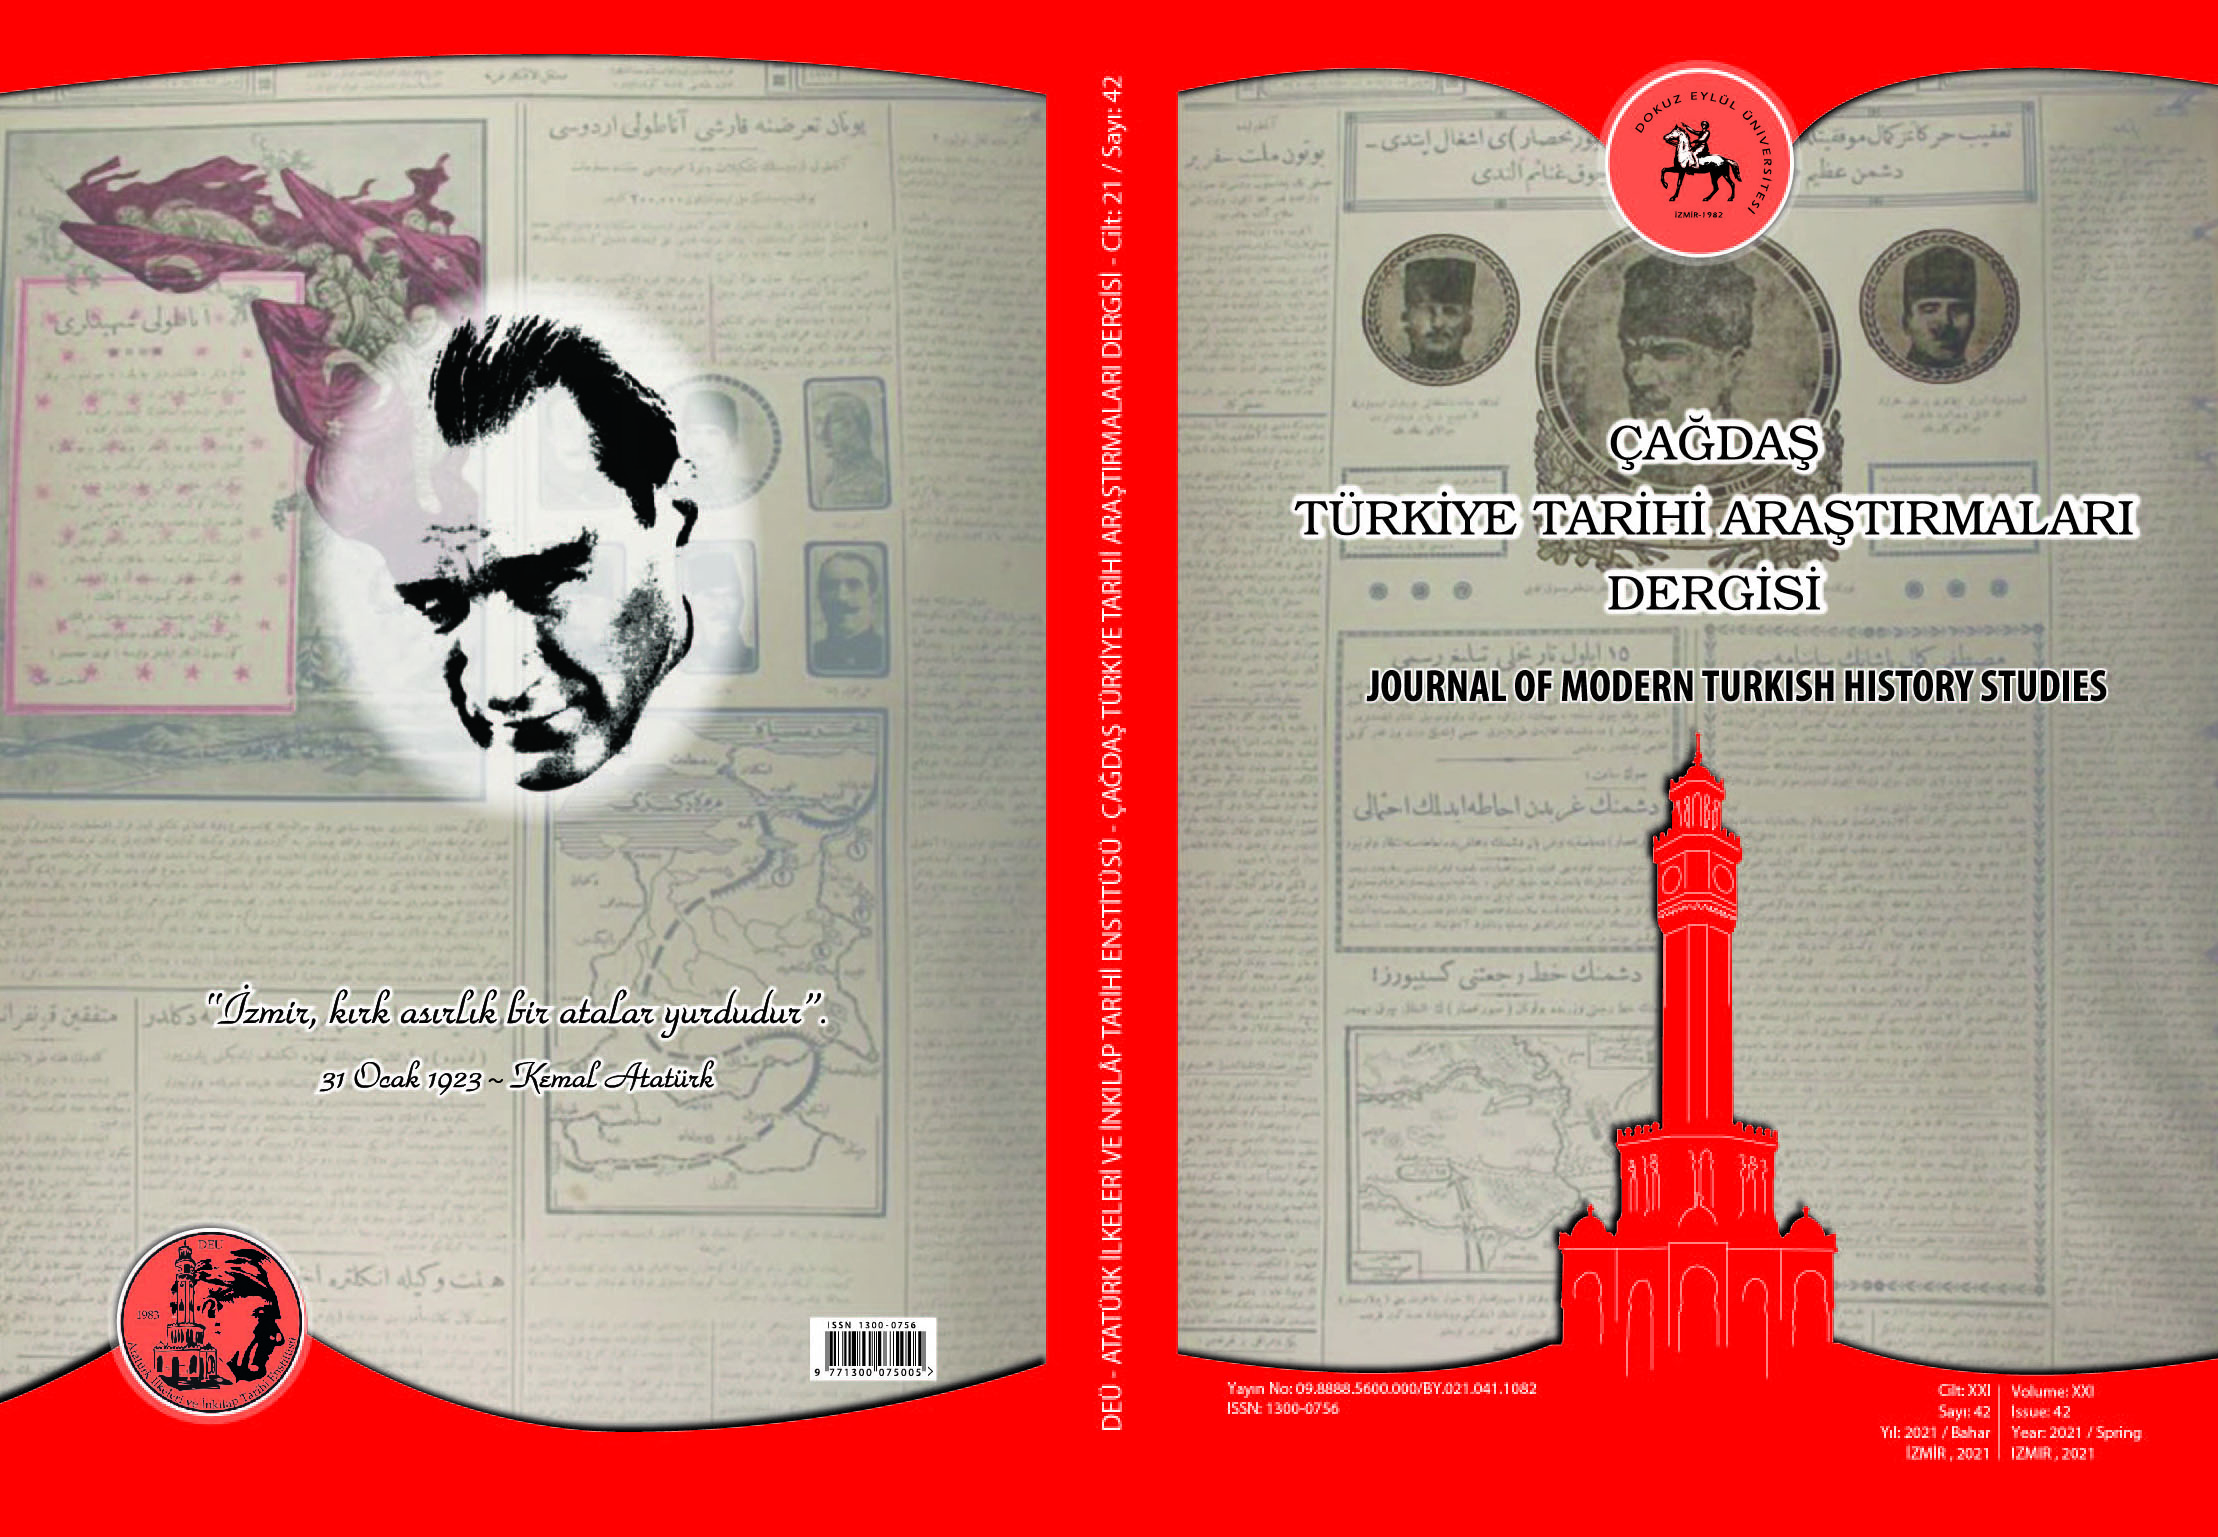 Çağdaş Türkiye Tarihi Araştırmaları Dergisi 42. Sayısı Yayınlandı